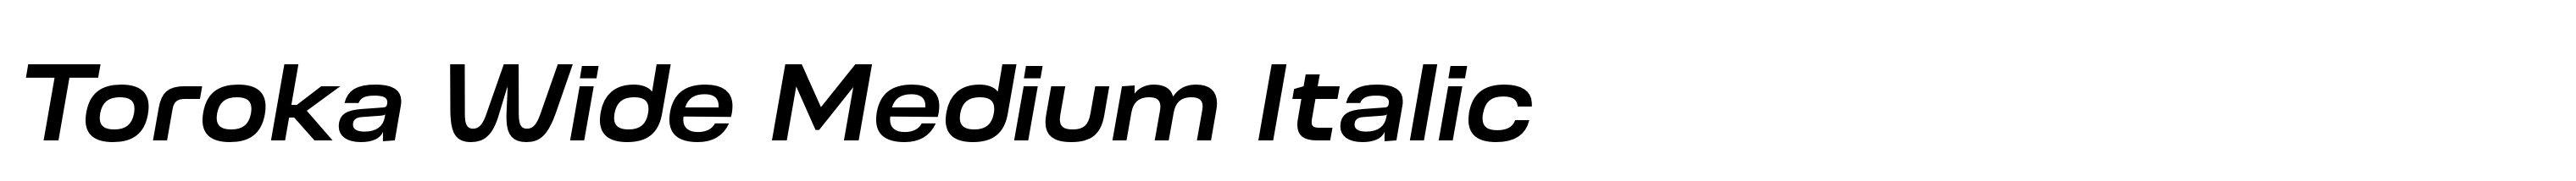 Toroka Wide Medium Italic